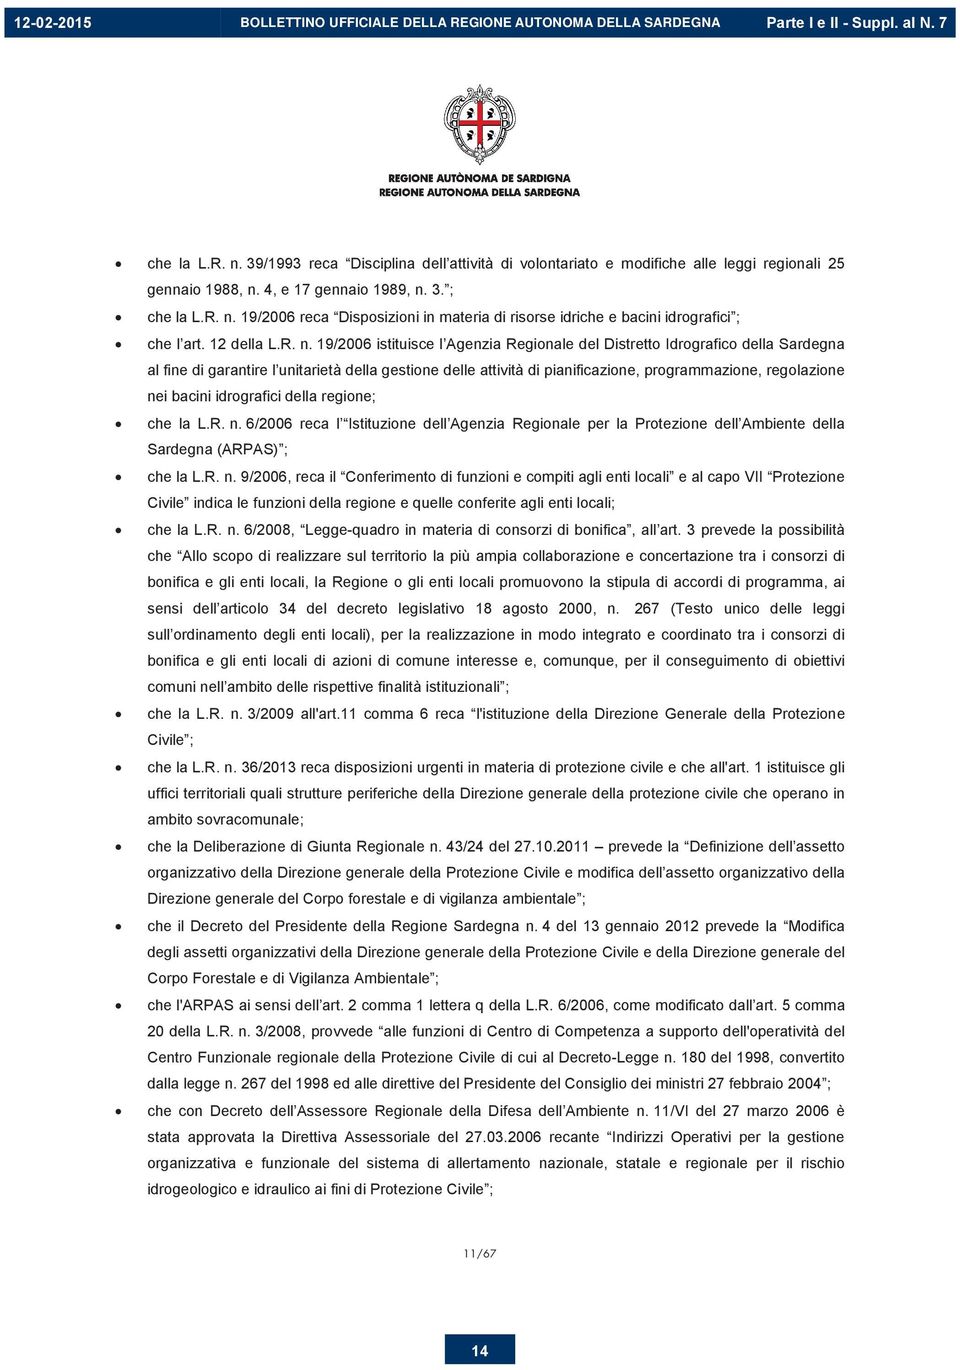 19/2006 istituisce l Agenzia Regionale del Distretto Idrografico della Sardegna al fine di garantire l unitarietà della gestione delle attività di pianificazione, programmazione, regolazione nei